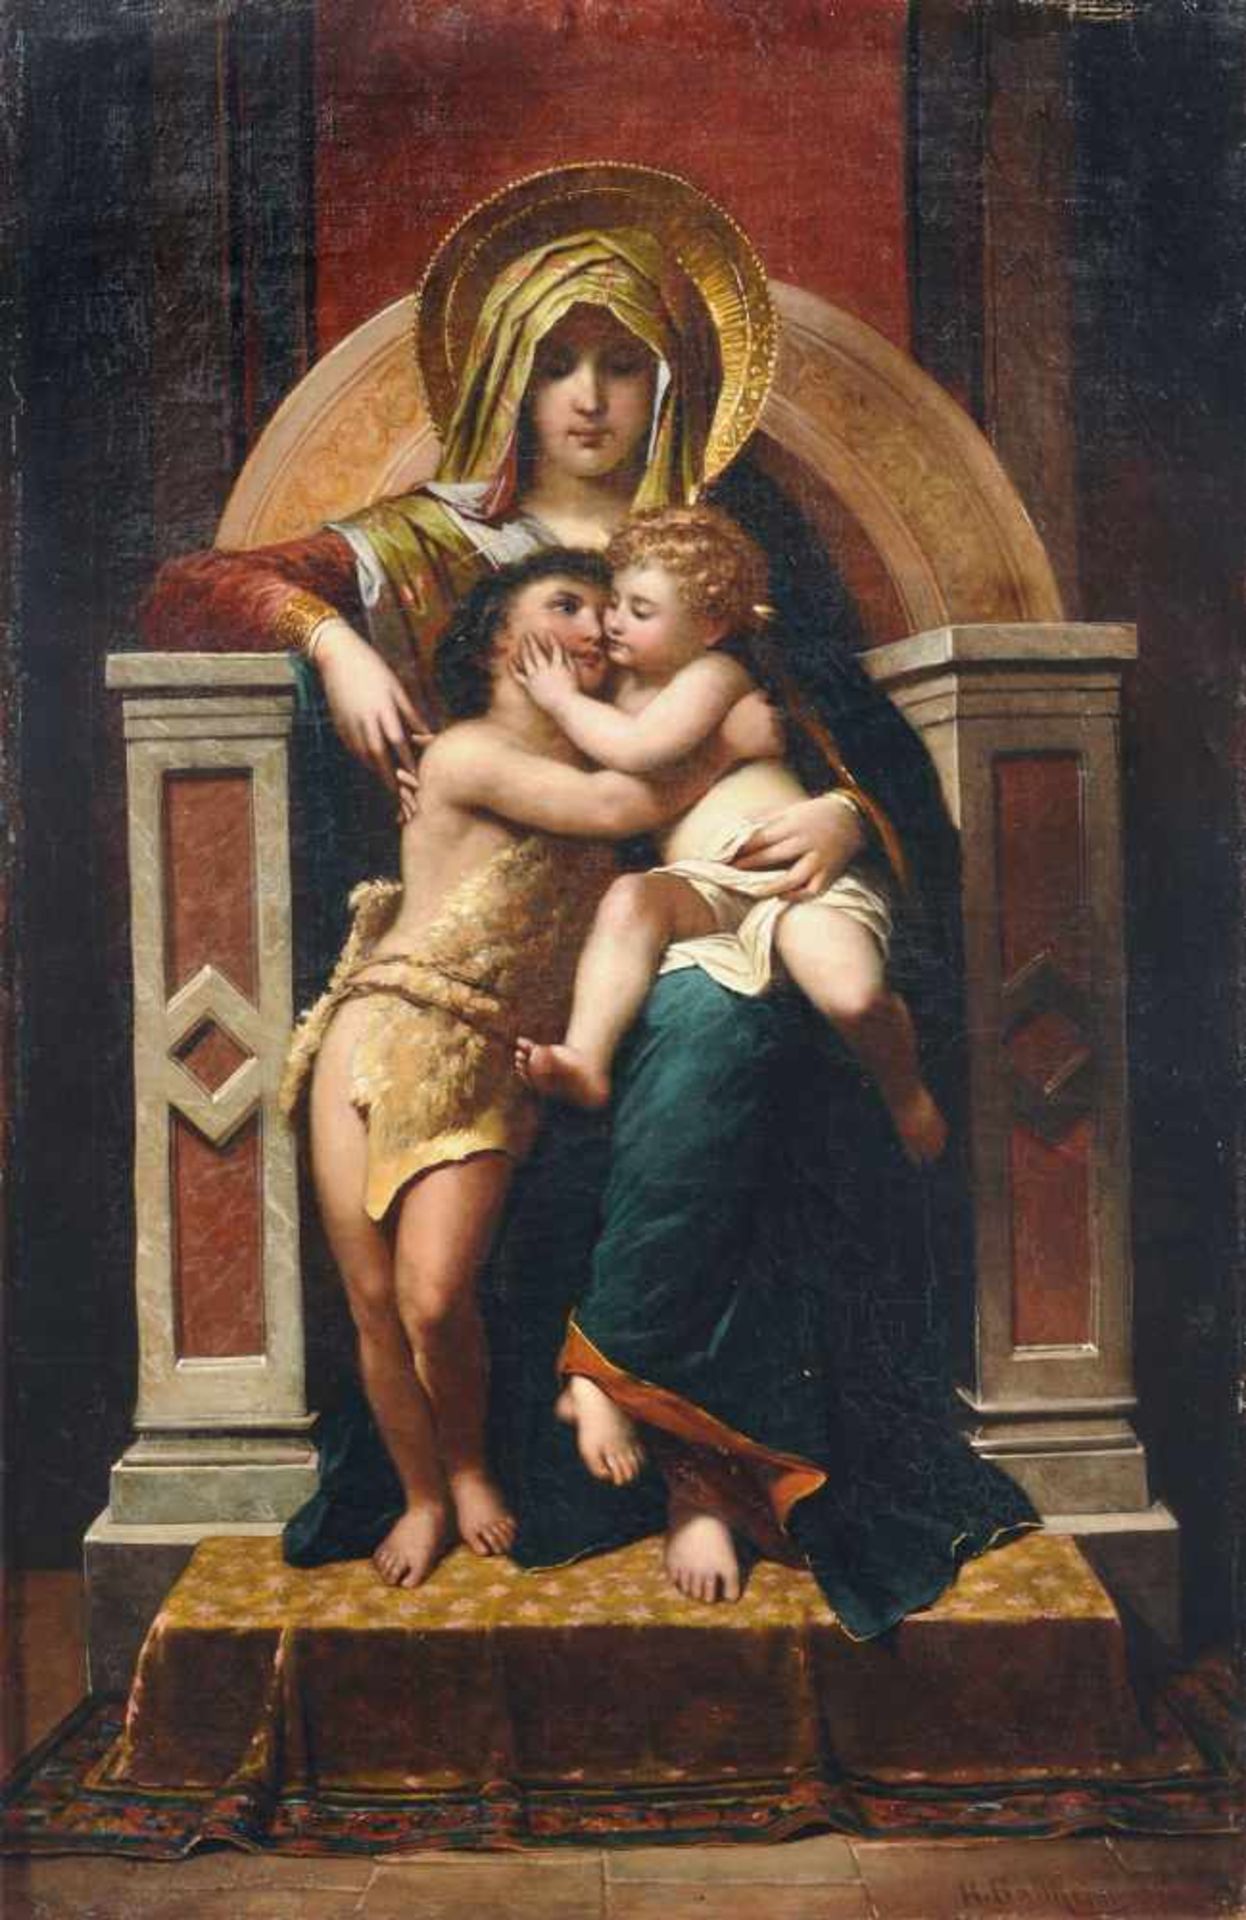 H. Ballheim, Thronende Madonna mit Jesus und Johannes. Um 1850-1880. Öl auf Leinwand. Signiert "H.